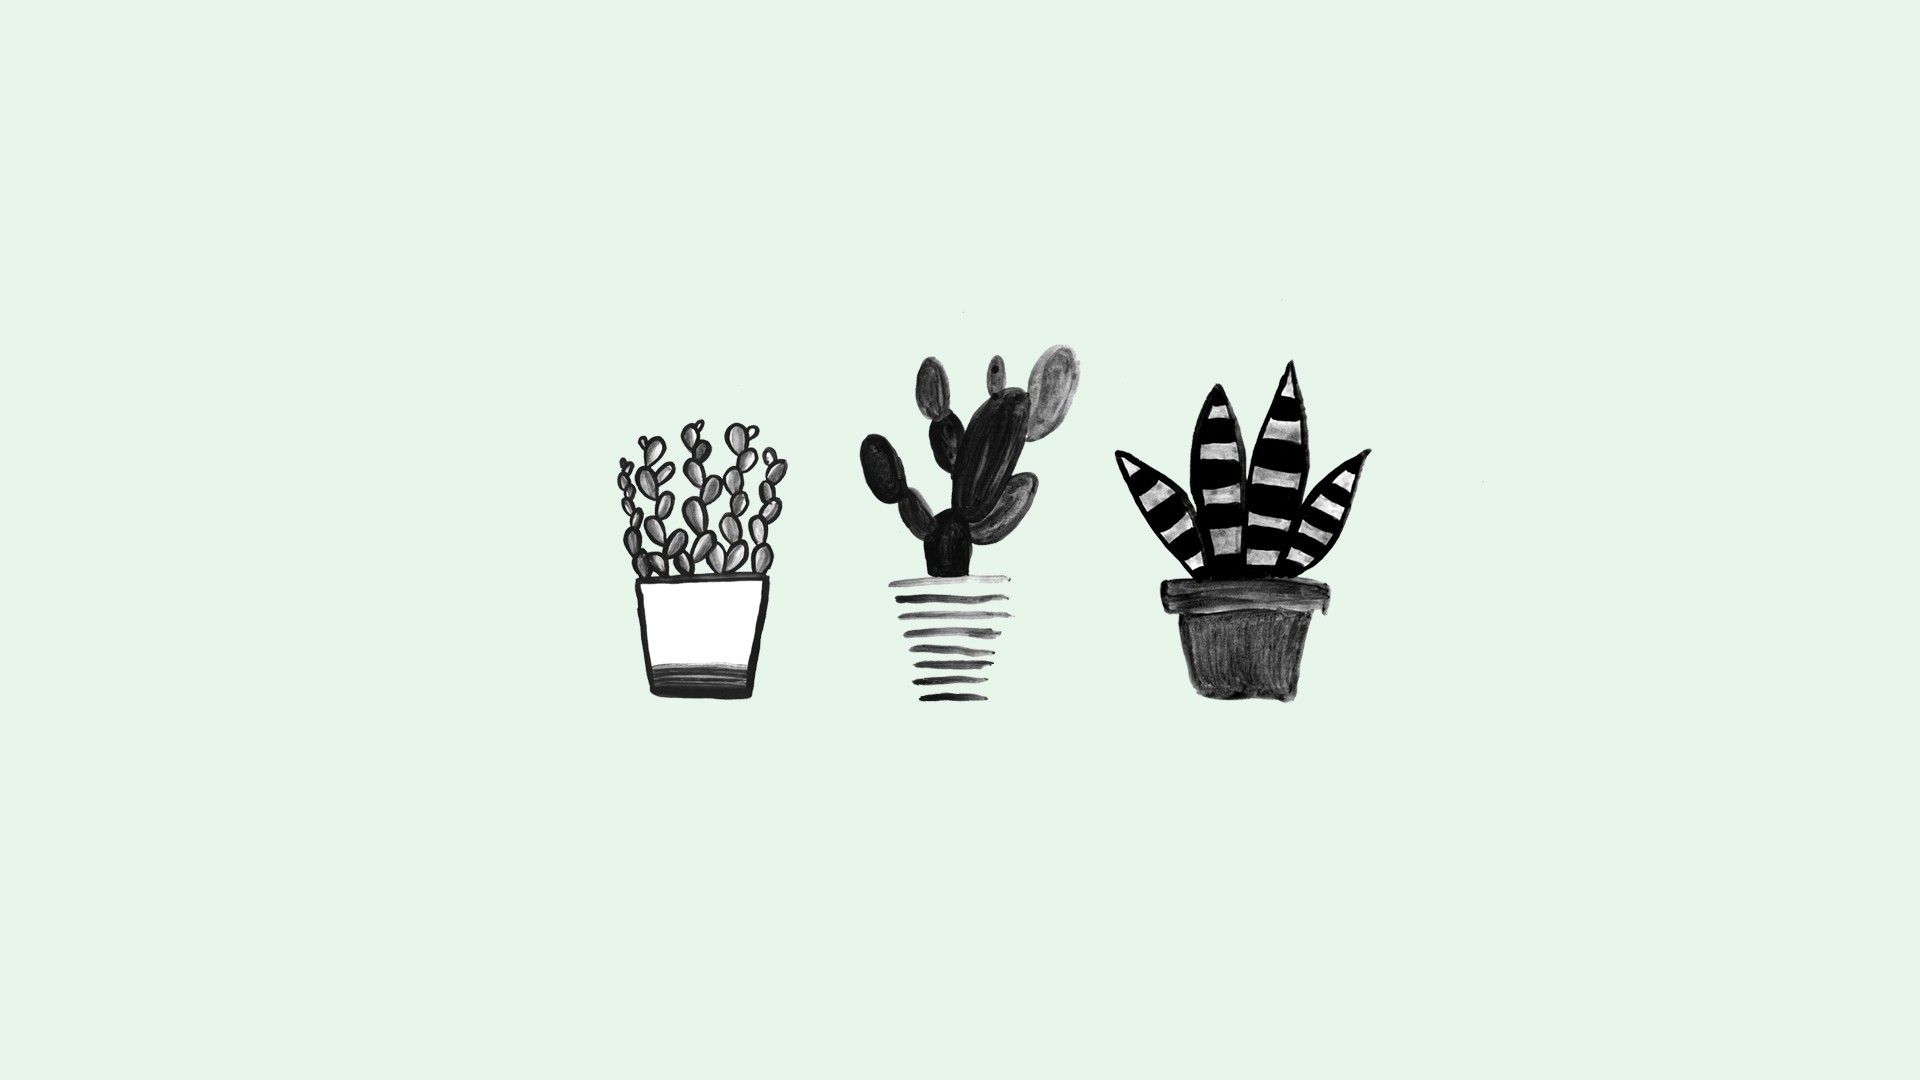 Three cacti in a row - Cactus